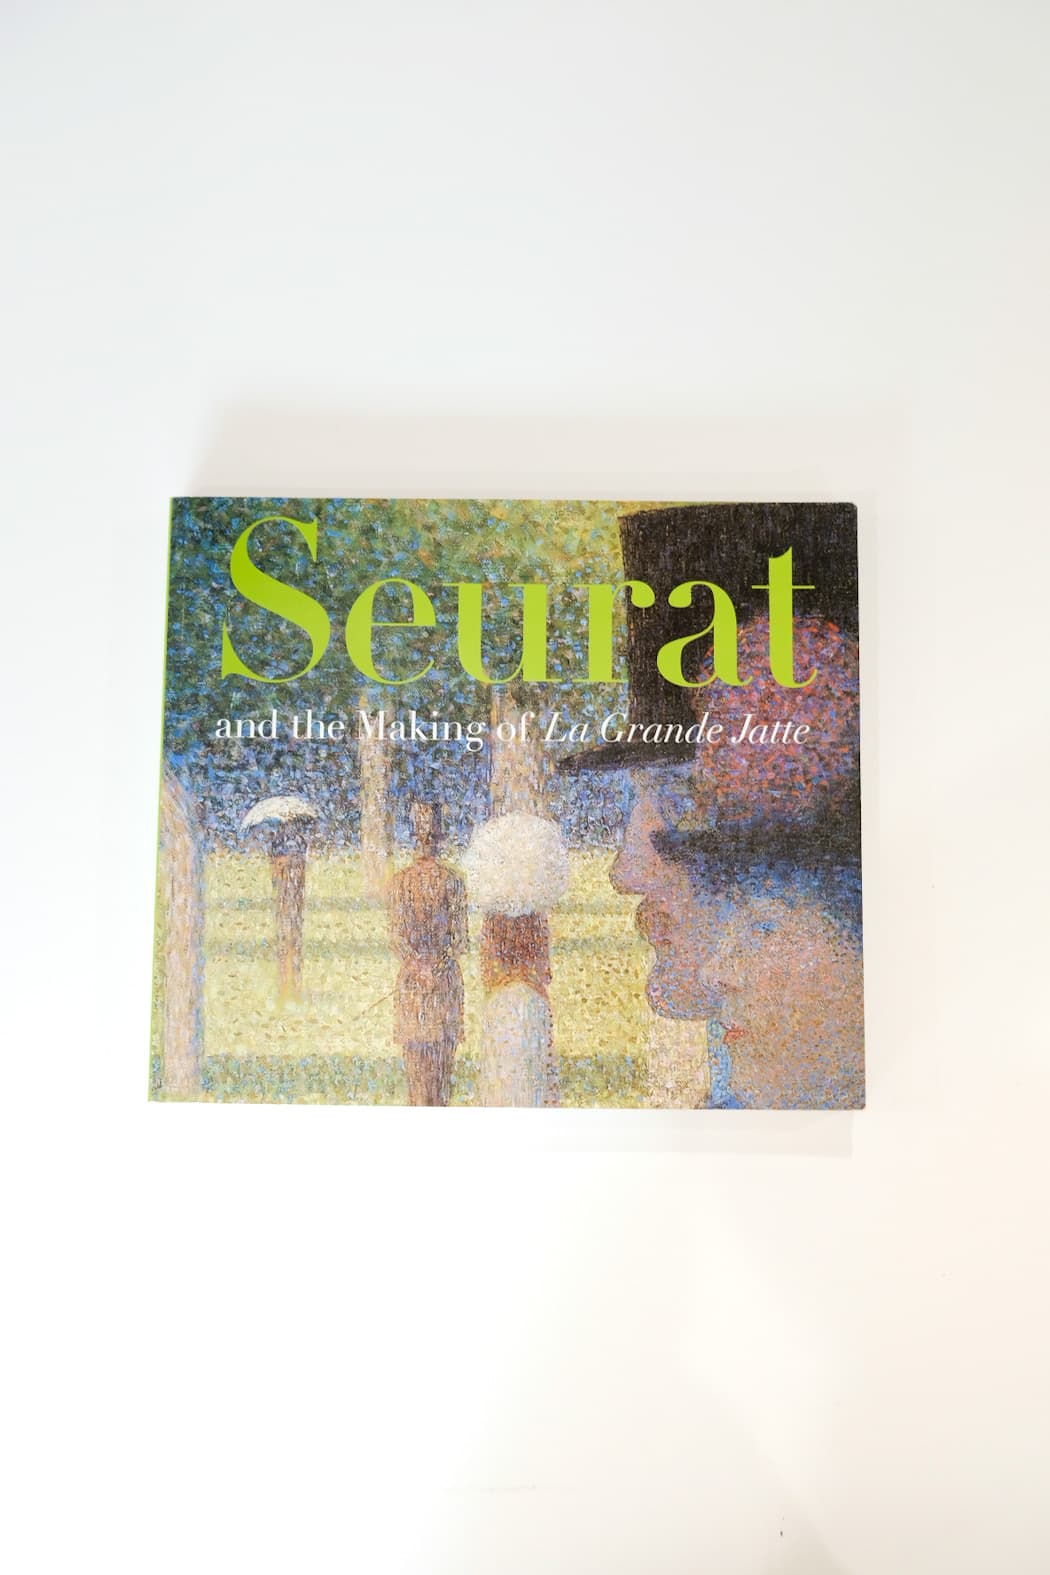 Seurat and the Making of La Grande Jatte Herbert Robert L.